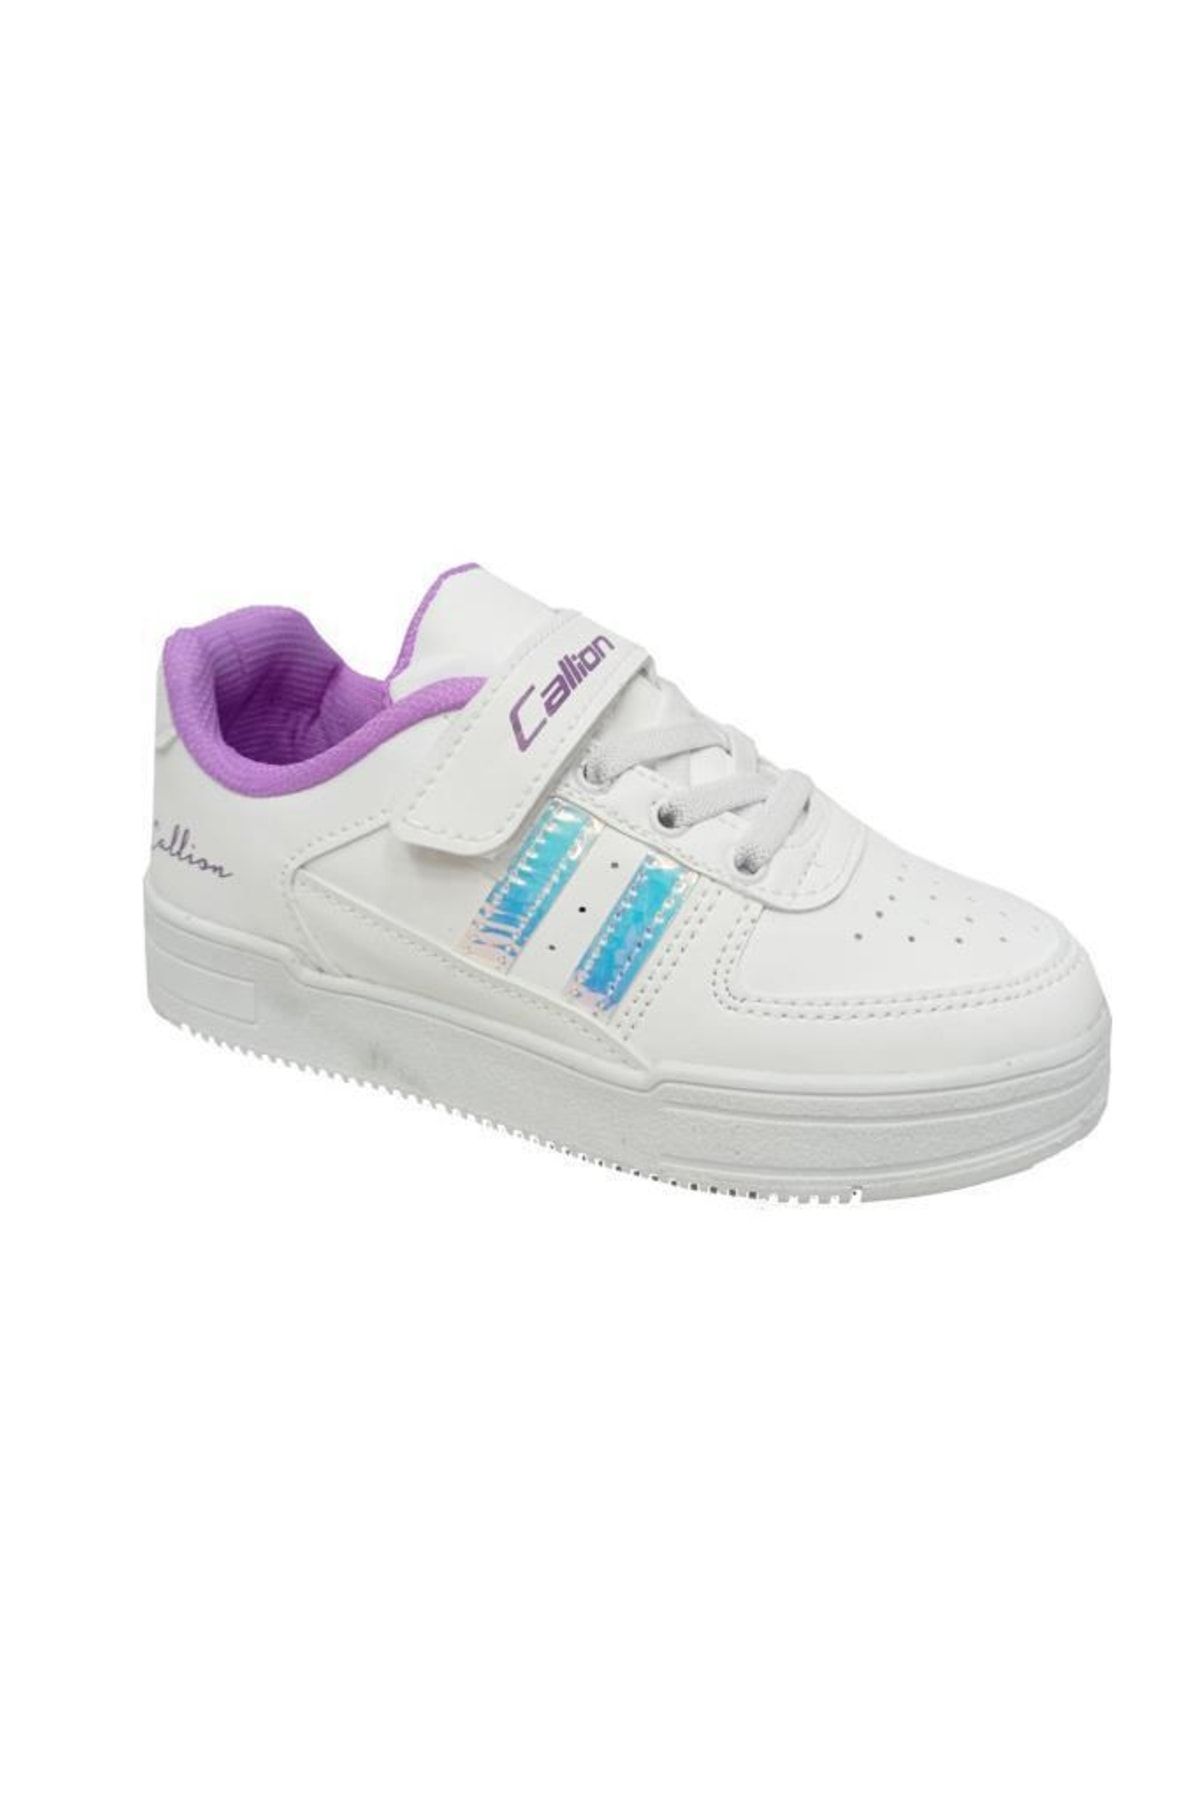 Callion 2024 Deri Kız Çocuk Sneakers Ayakkabı 26-30 Beyaz Lila